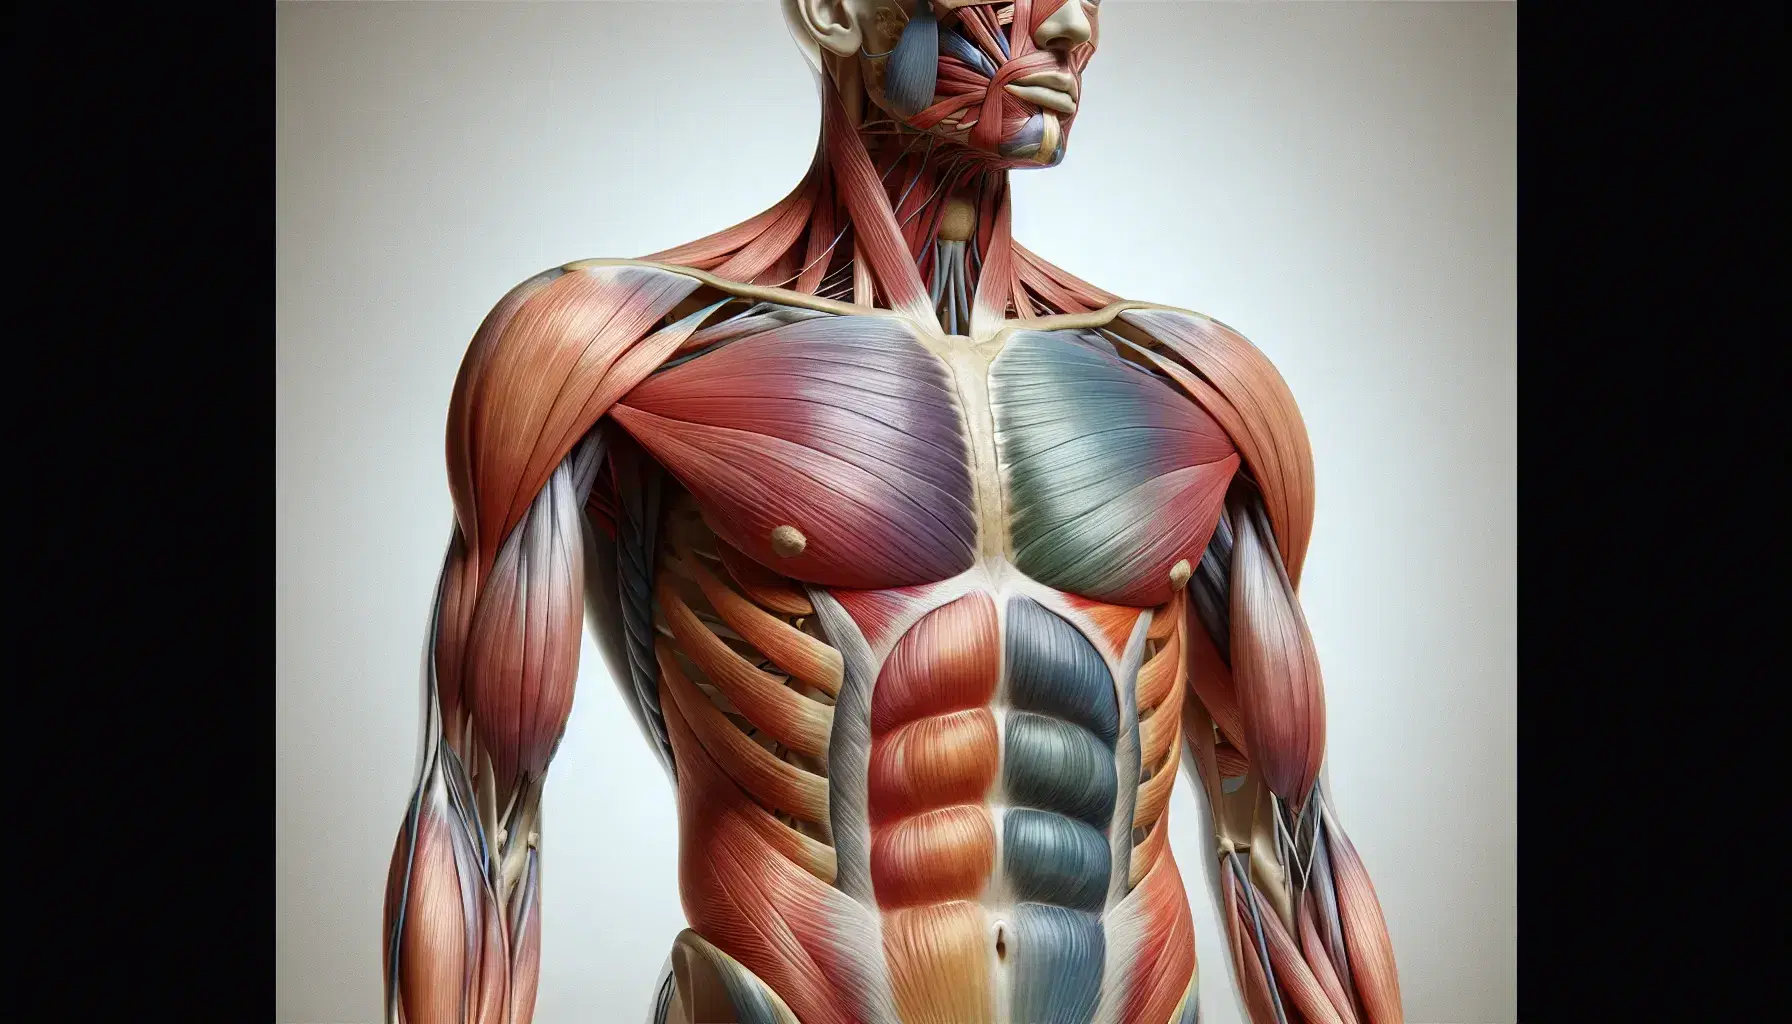 Illustrazione anatomica dettagliata dei muscoli addominali umani con pelle trasparente che mostra strati muscolari colorati in posizione eretta.